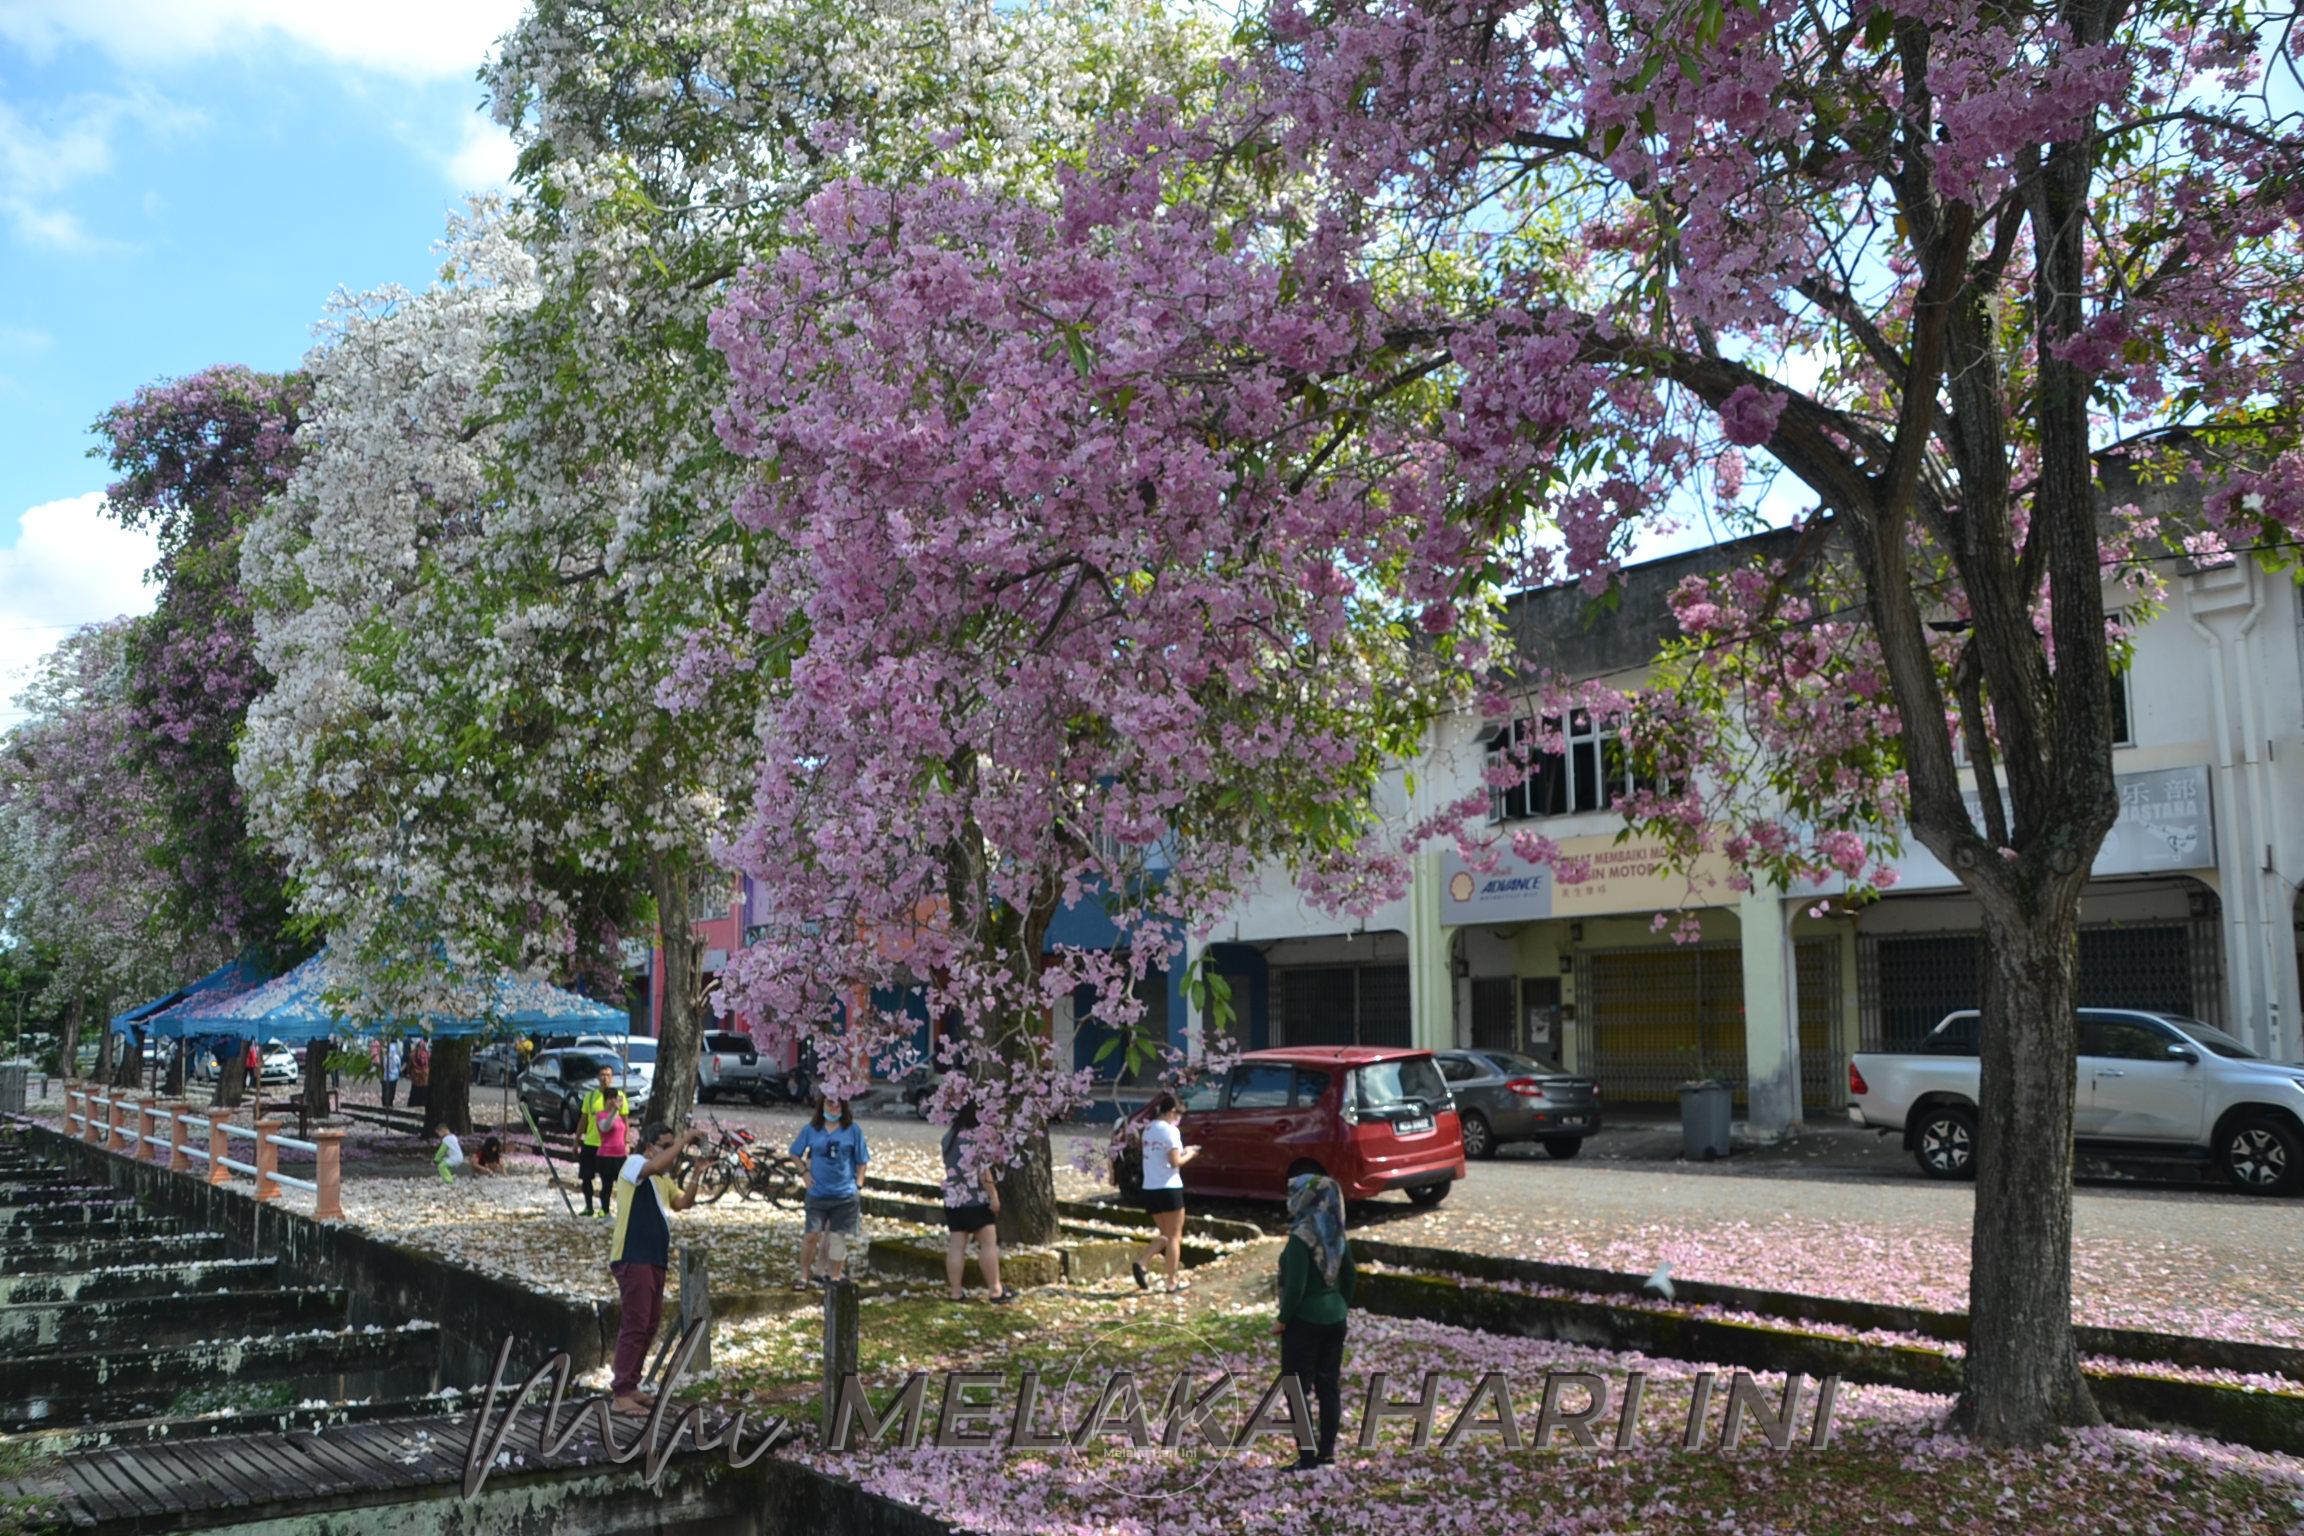 Keindahan pohon tekoma Taman Bandar Baru Utama jadi tumpuan